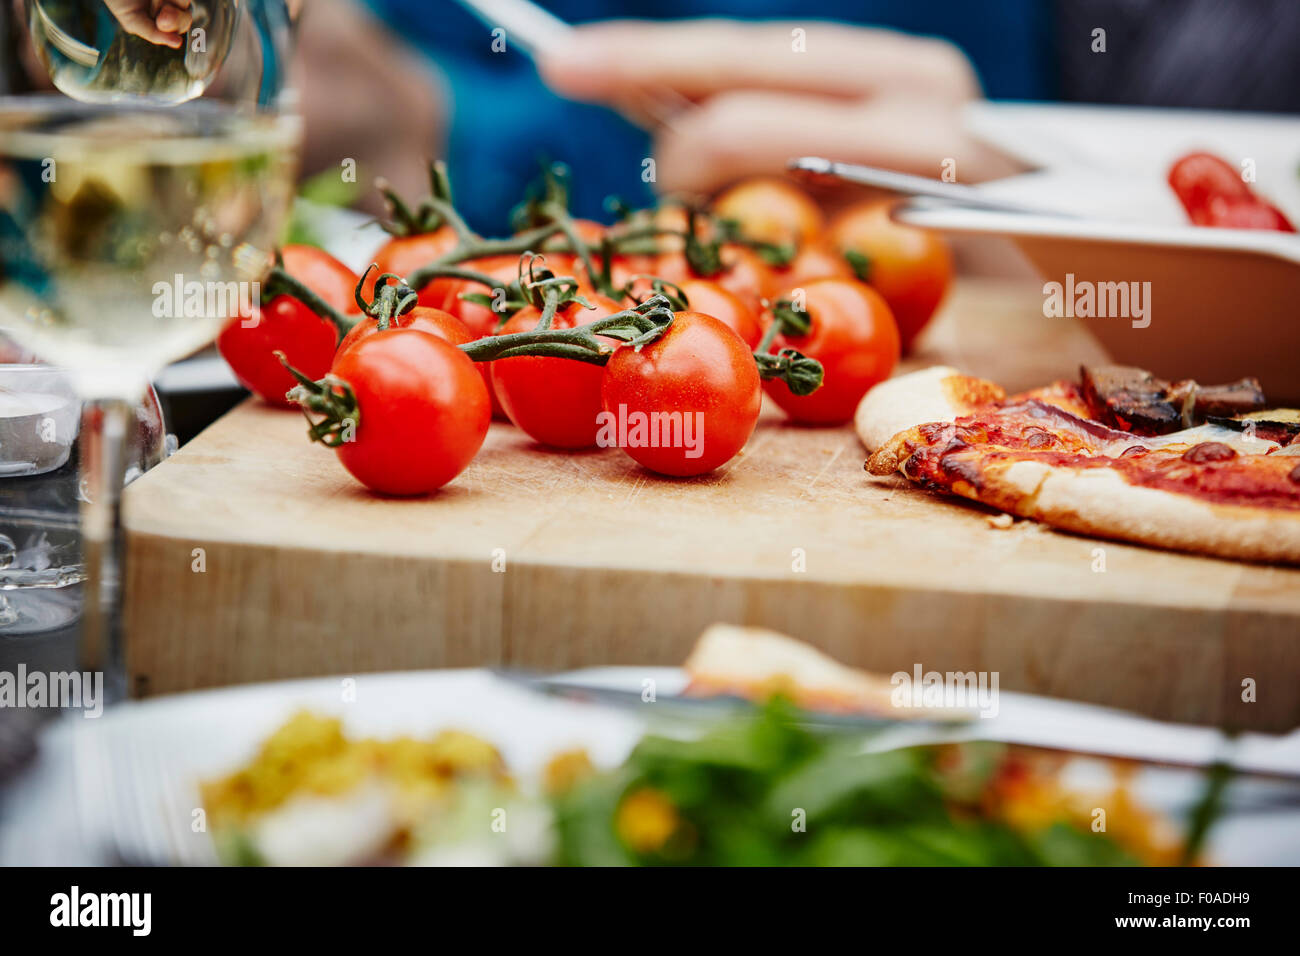 Vitigno freschi pomodori sul tagliere, close up Foto Stock